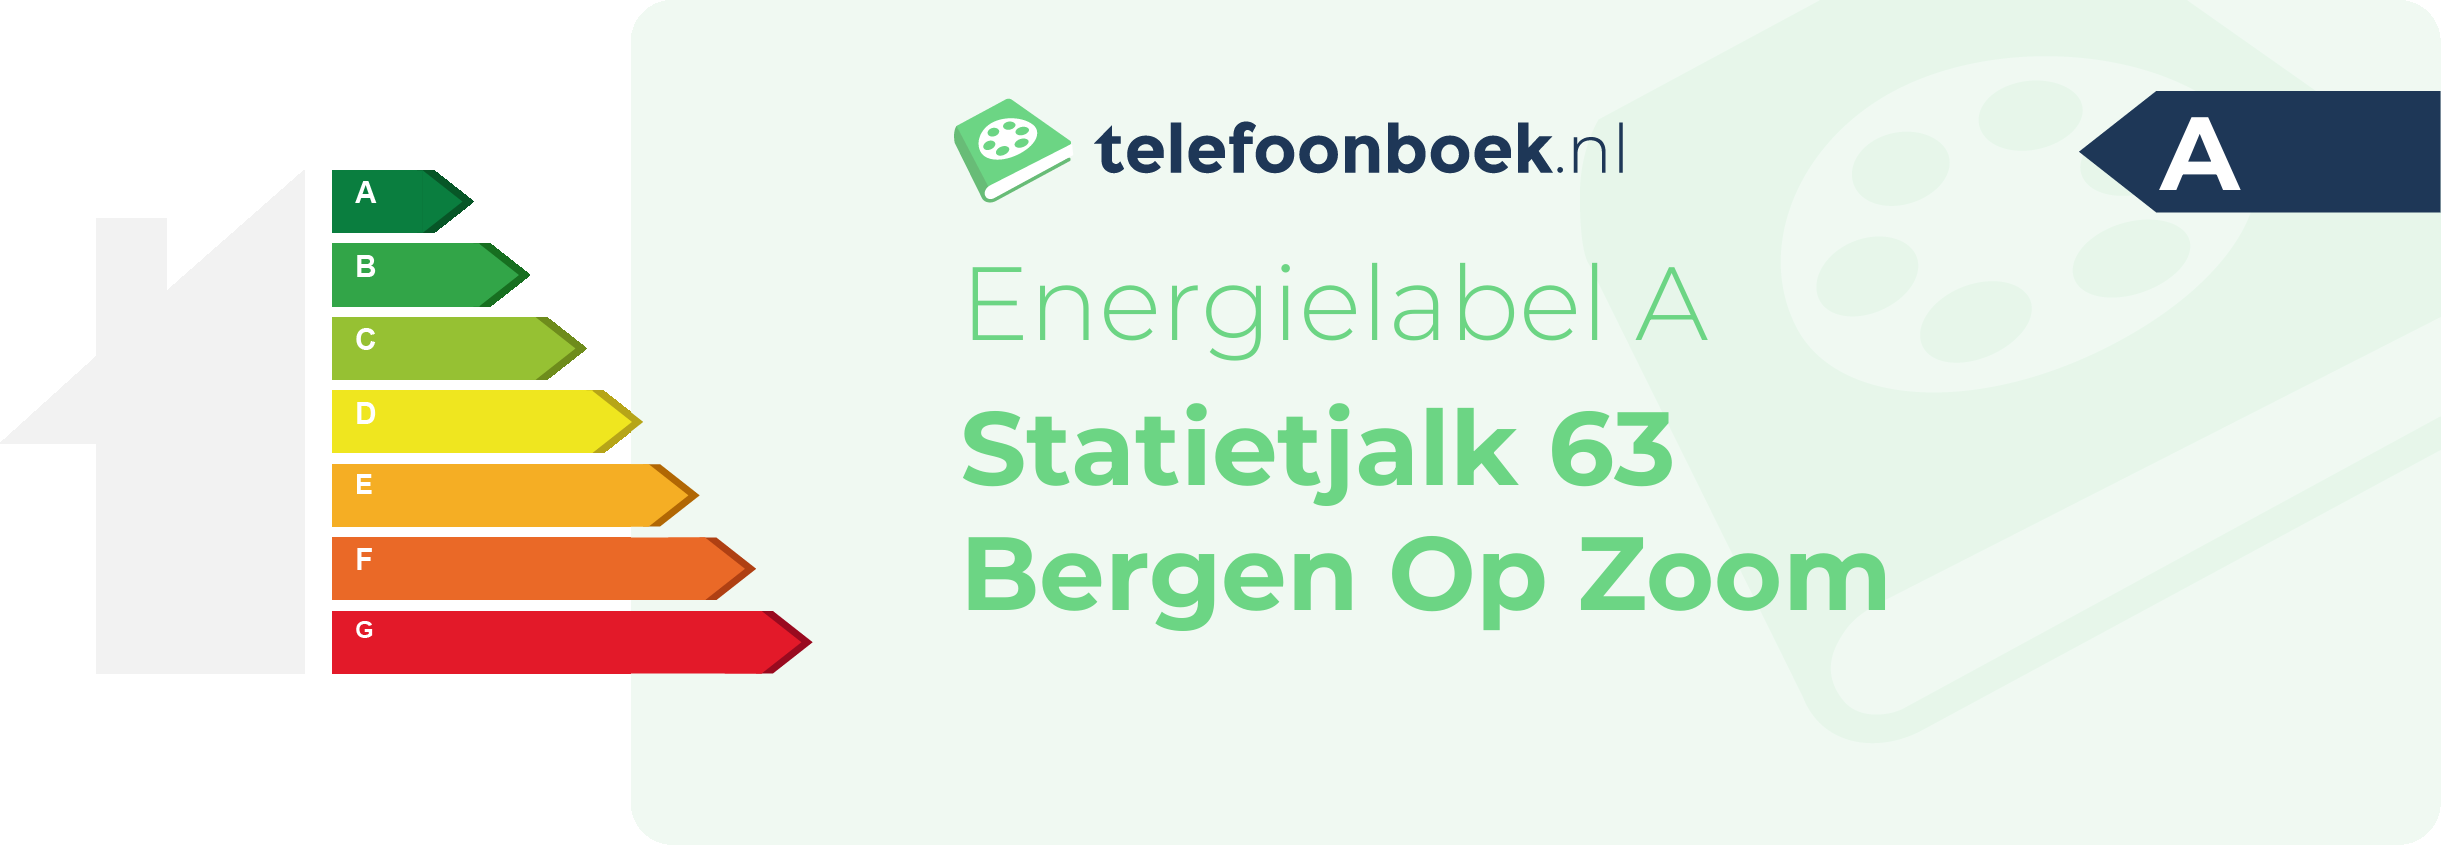 Energielabel Statietjalk 63 Bergen Op Zoom